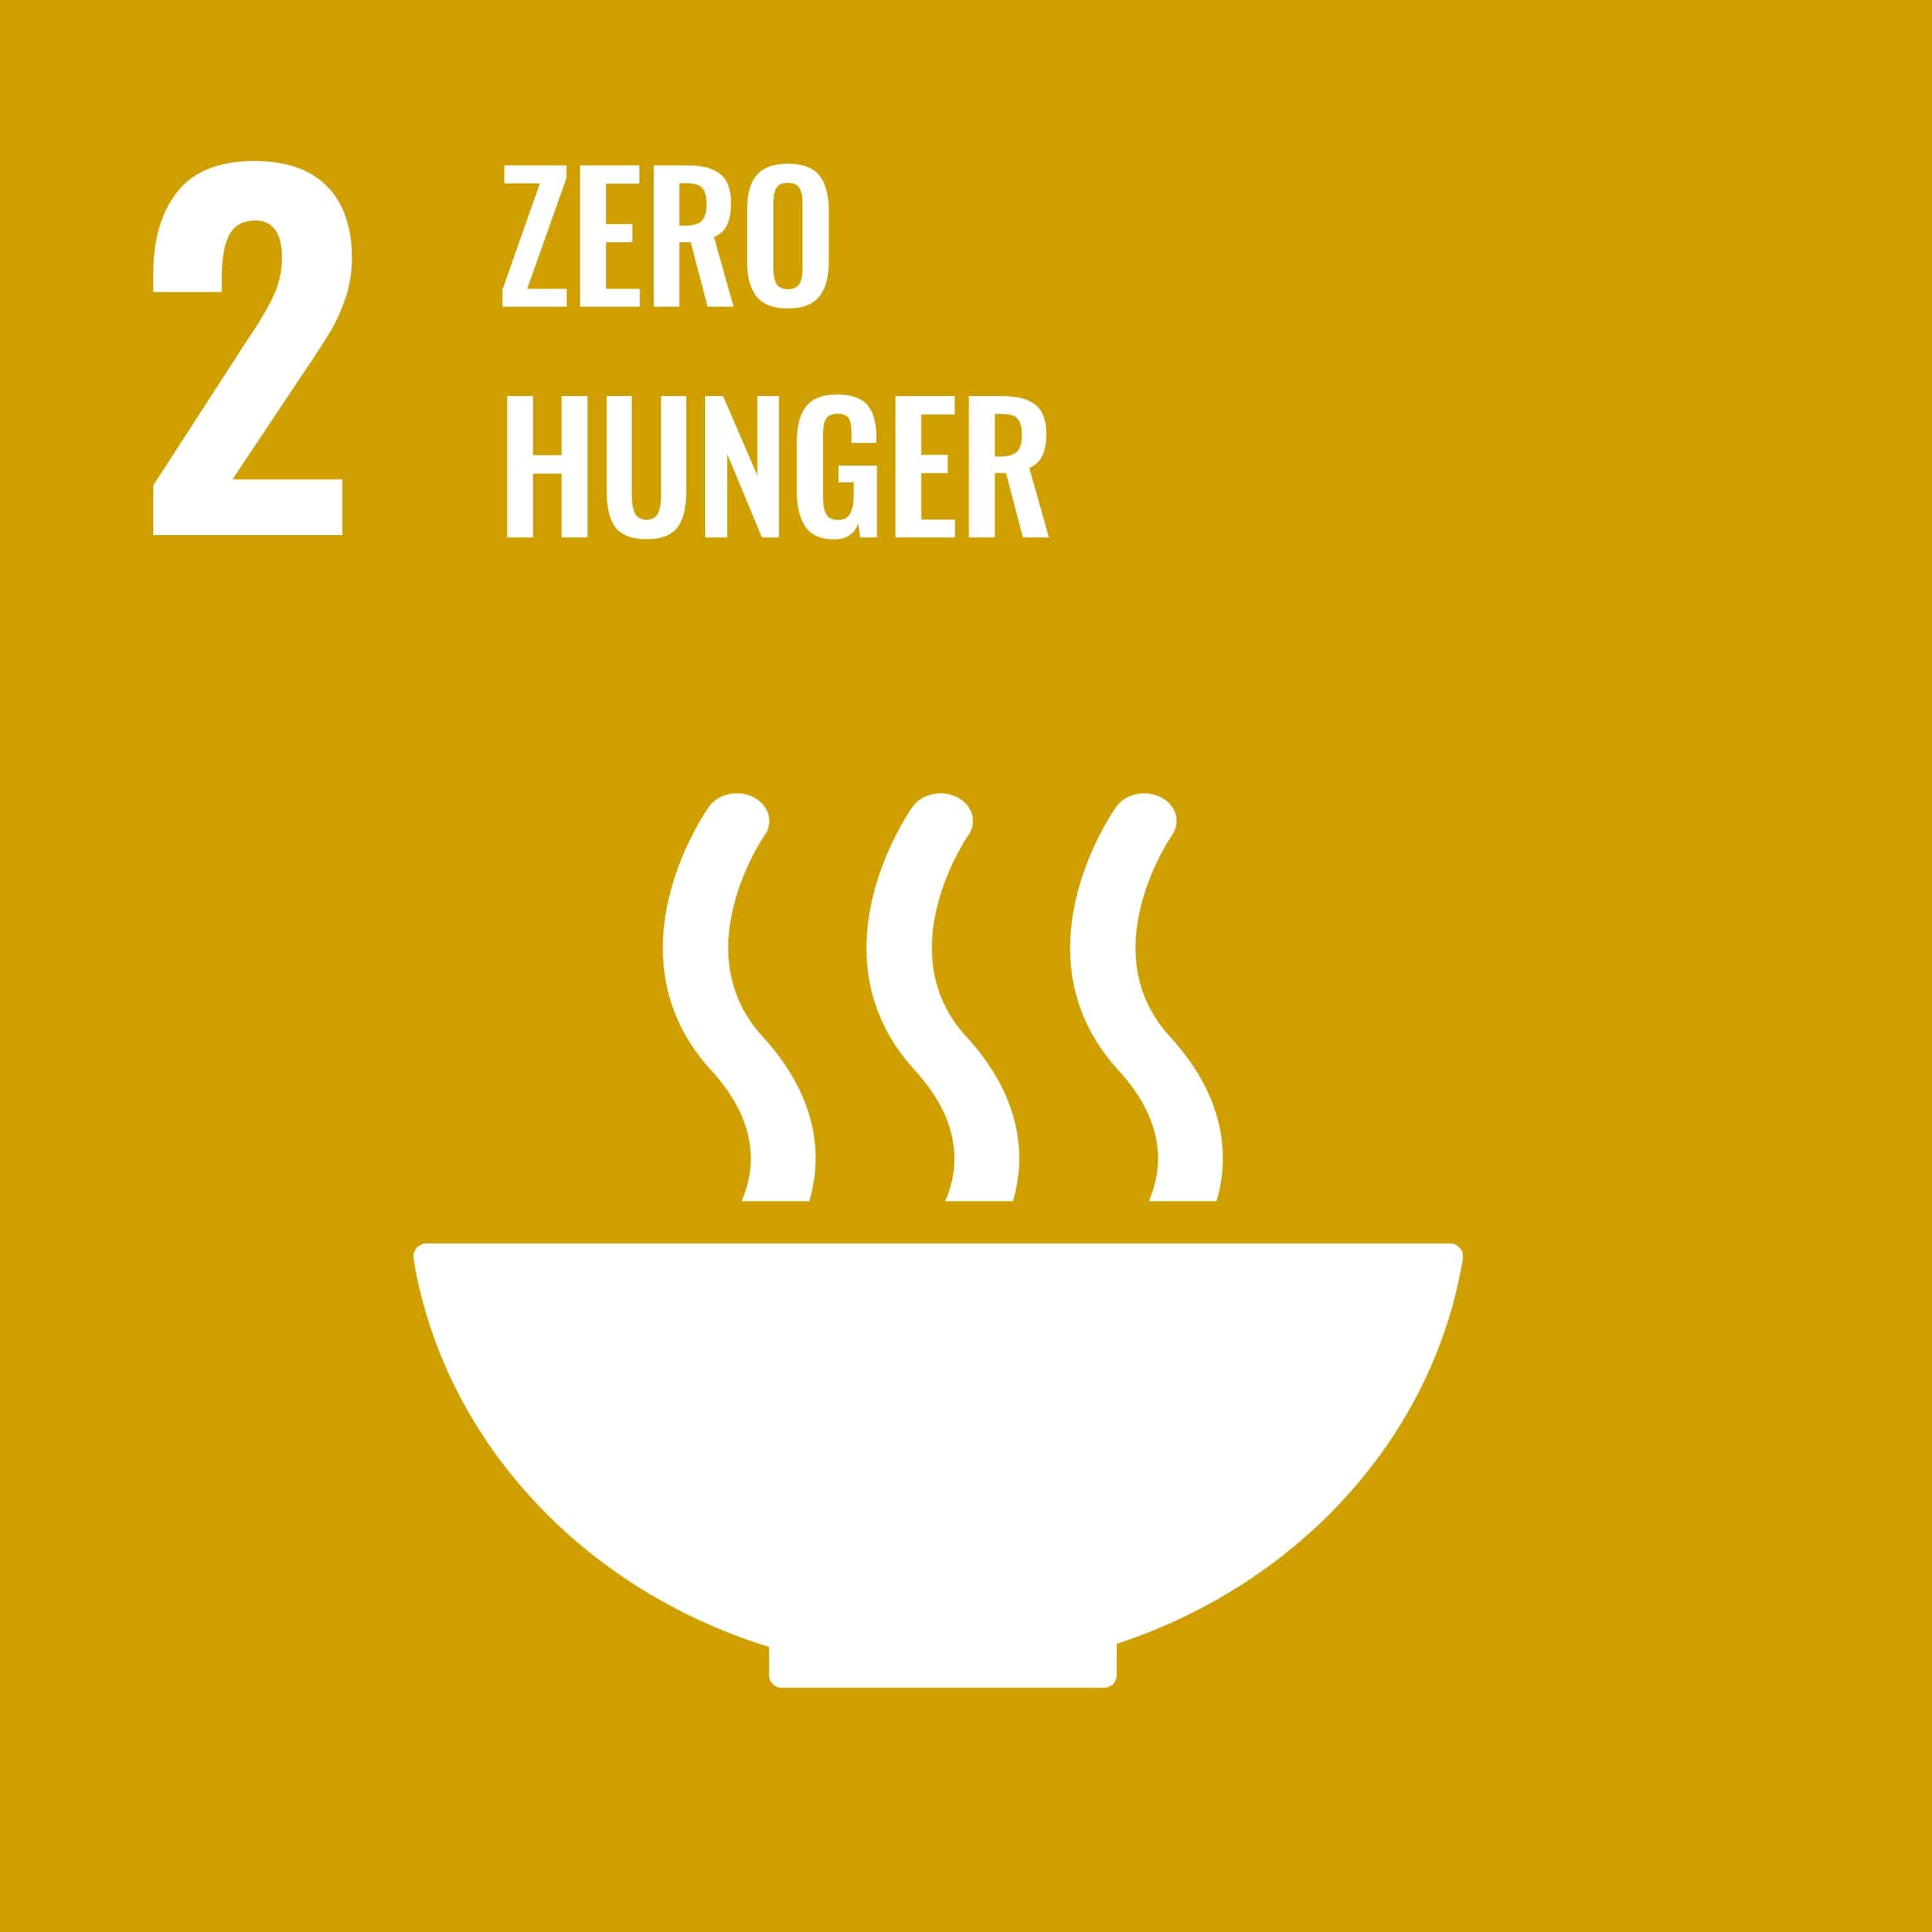 goal number 2 zero hunger